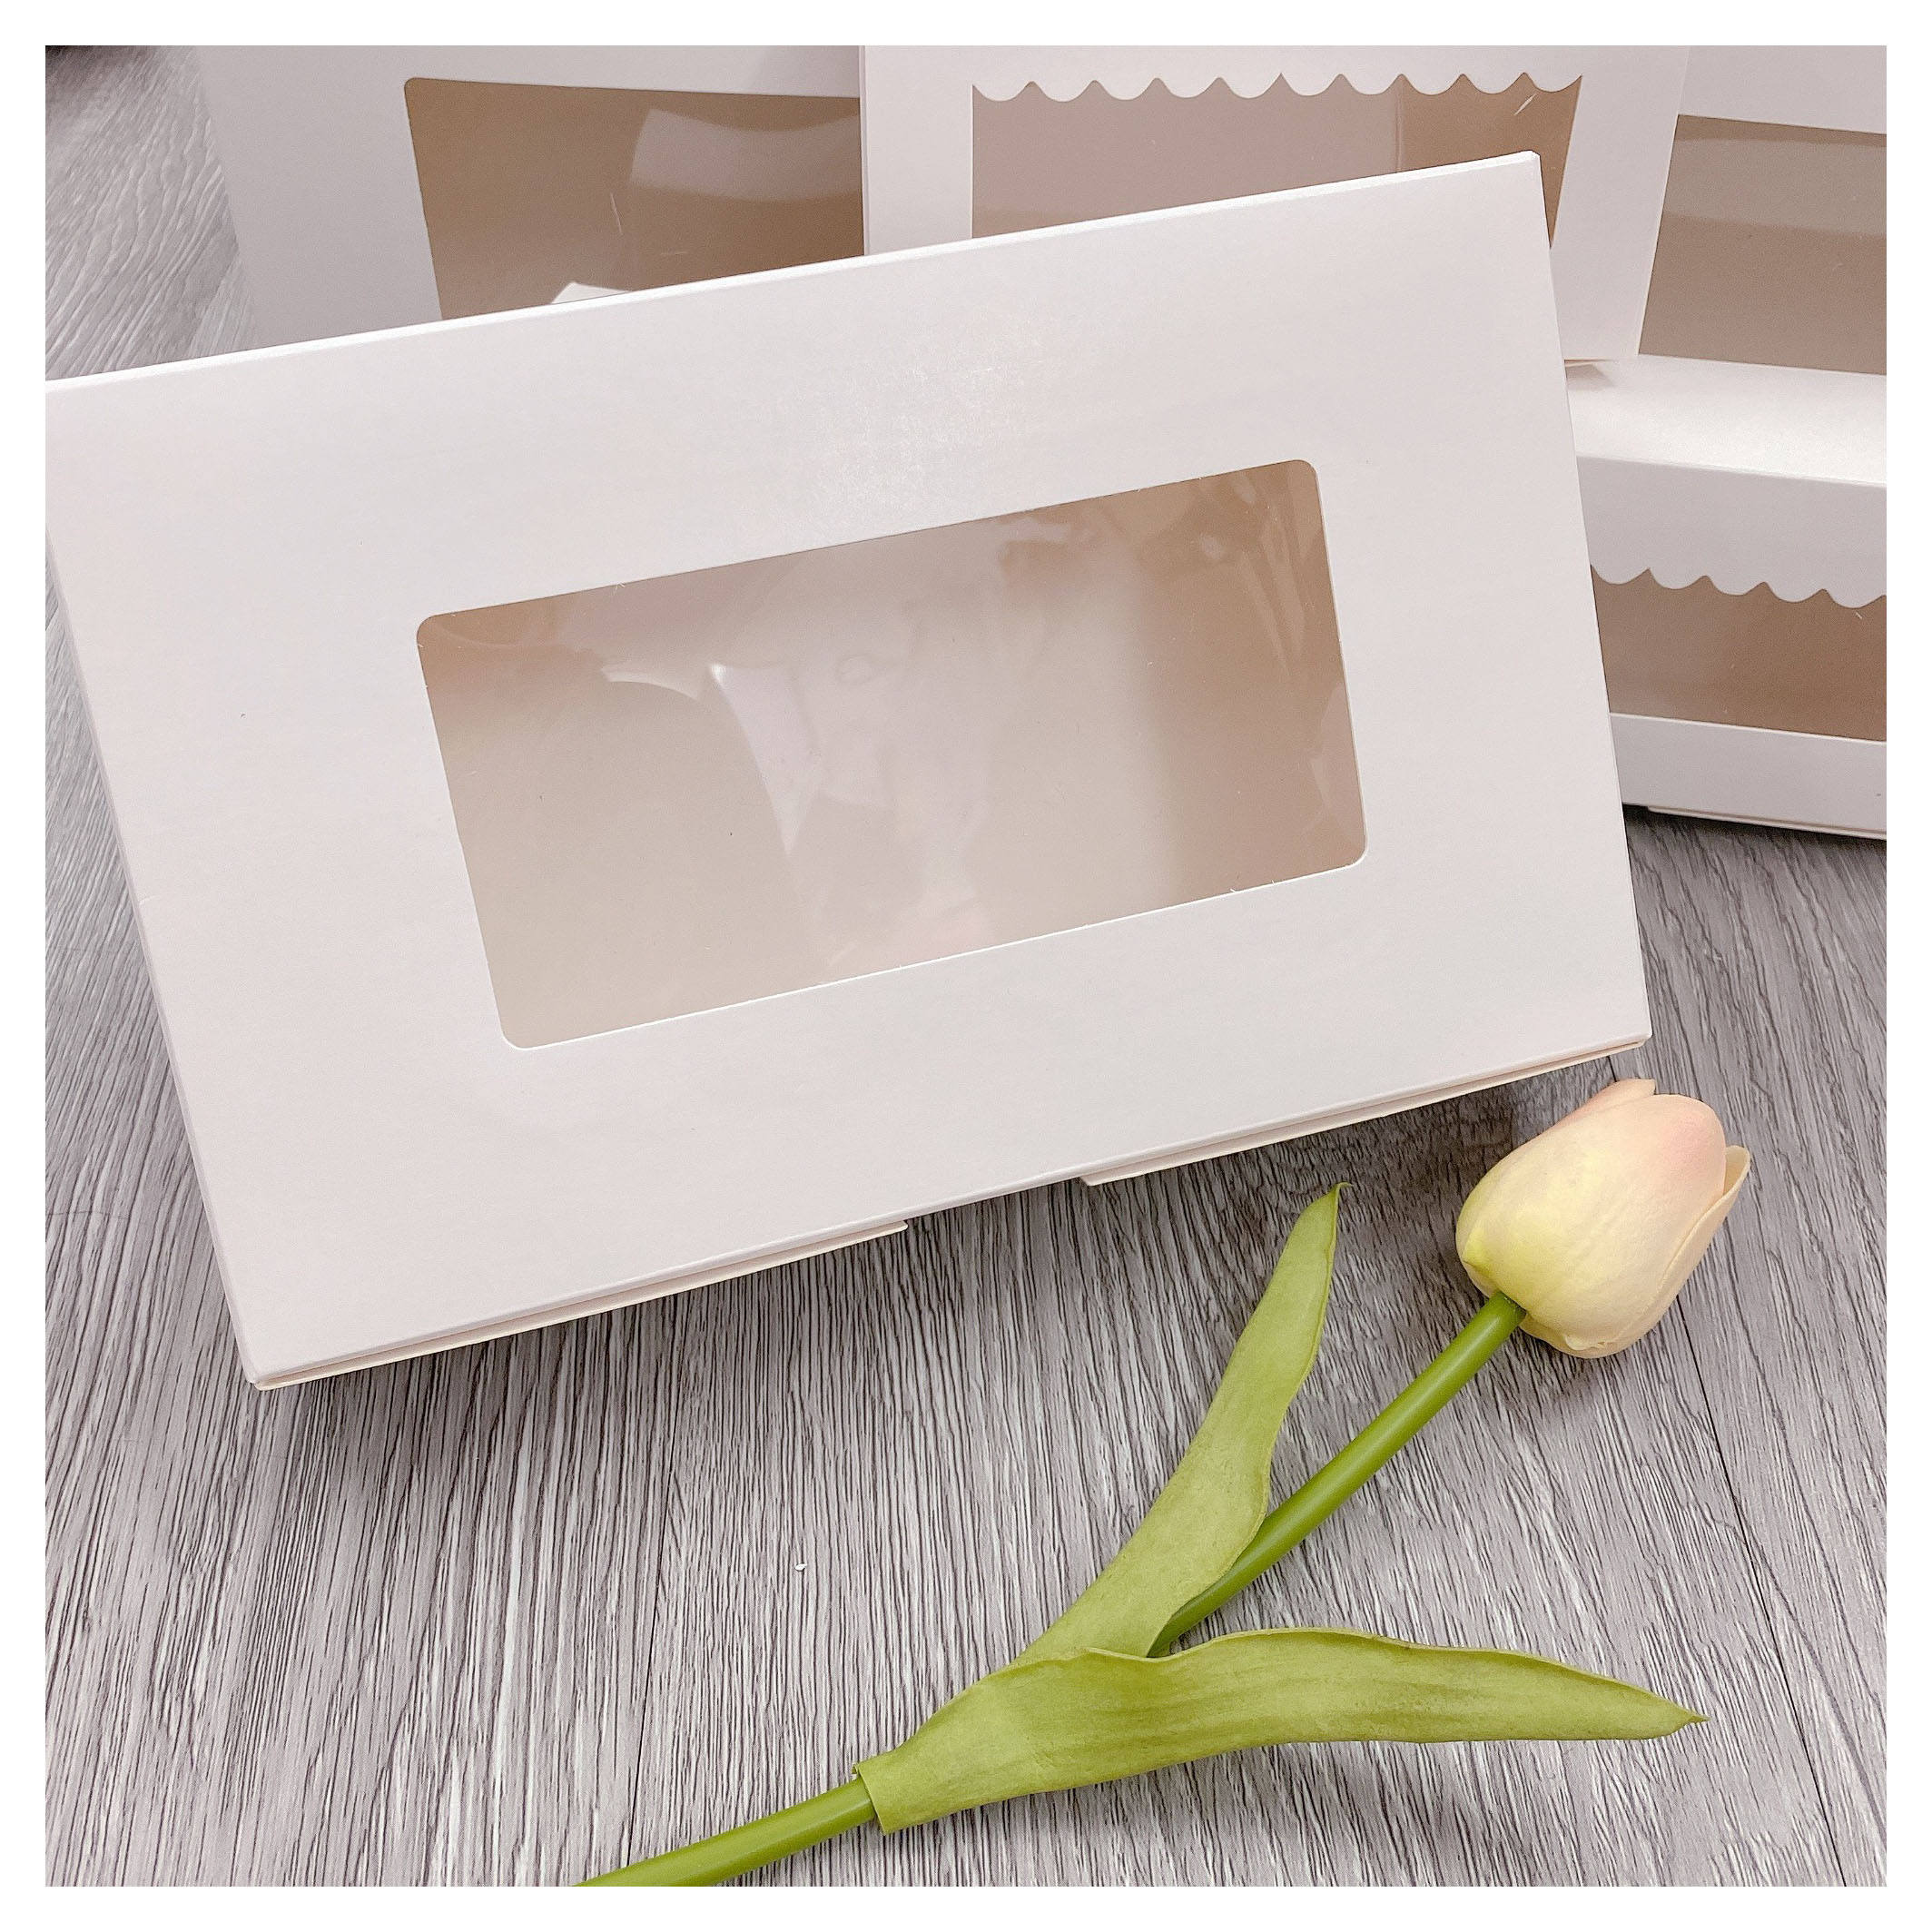 [CÓ QUÀ TẶNG KÈM] Set 5 hộp Hộp giấy trắng có cửa sổ kính giá rẻ 21.5x13.5x5 cm đựng bánh kẹo, bánh quy, đựng quà tặng nhỏ xinh xắn